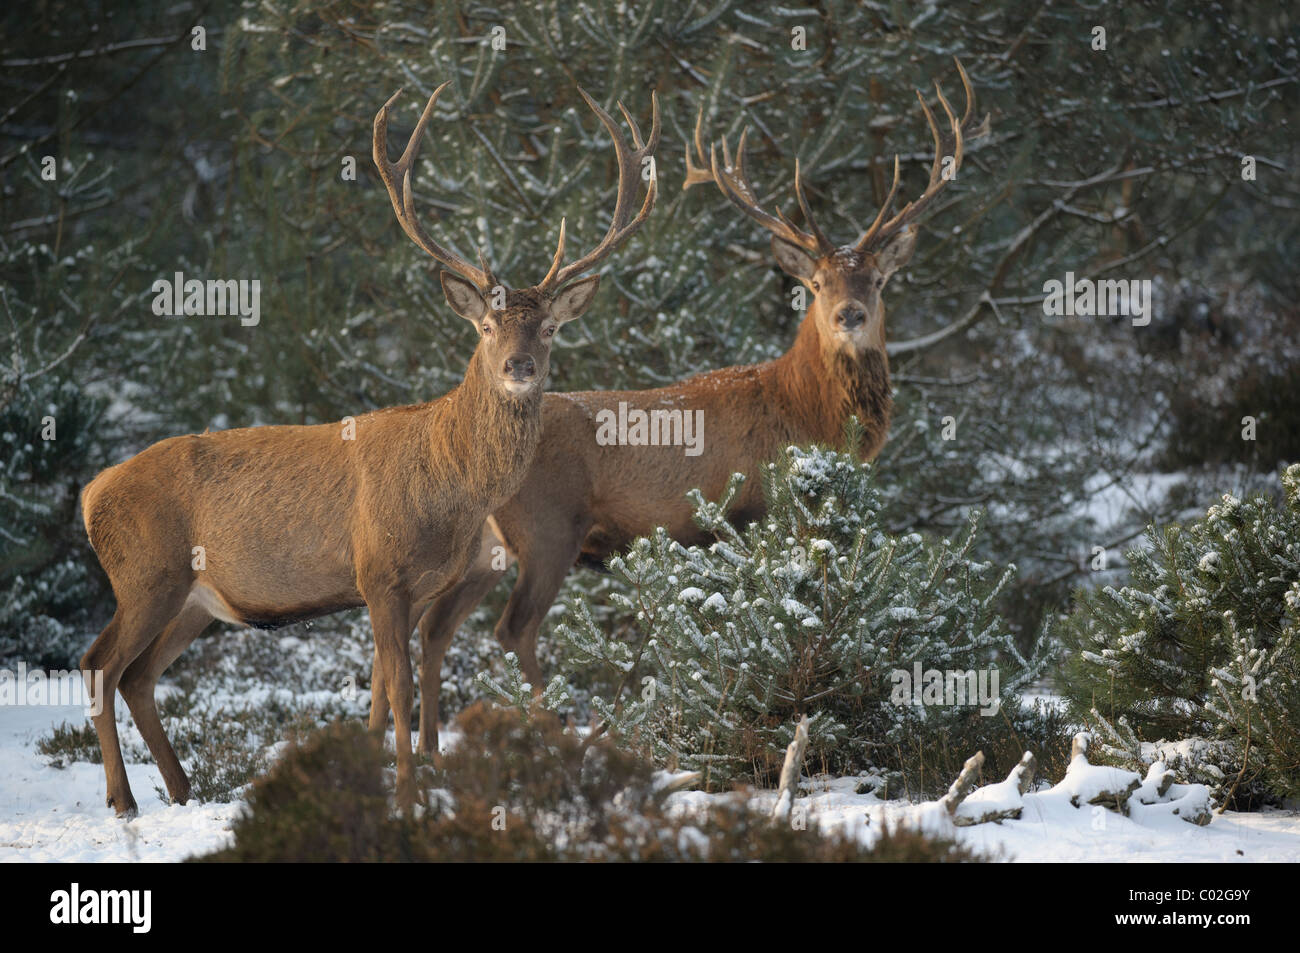 Ciervo rojo (Cervus elaphus). Dos ciervos de pie en el bosque de pinos nevado mientras se mira a la cámara, de Veluwe, Países Bajos. Foto de stock